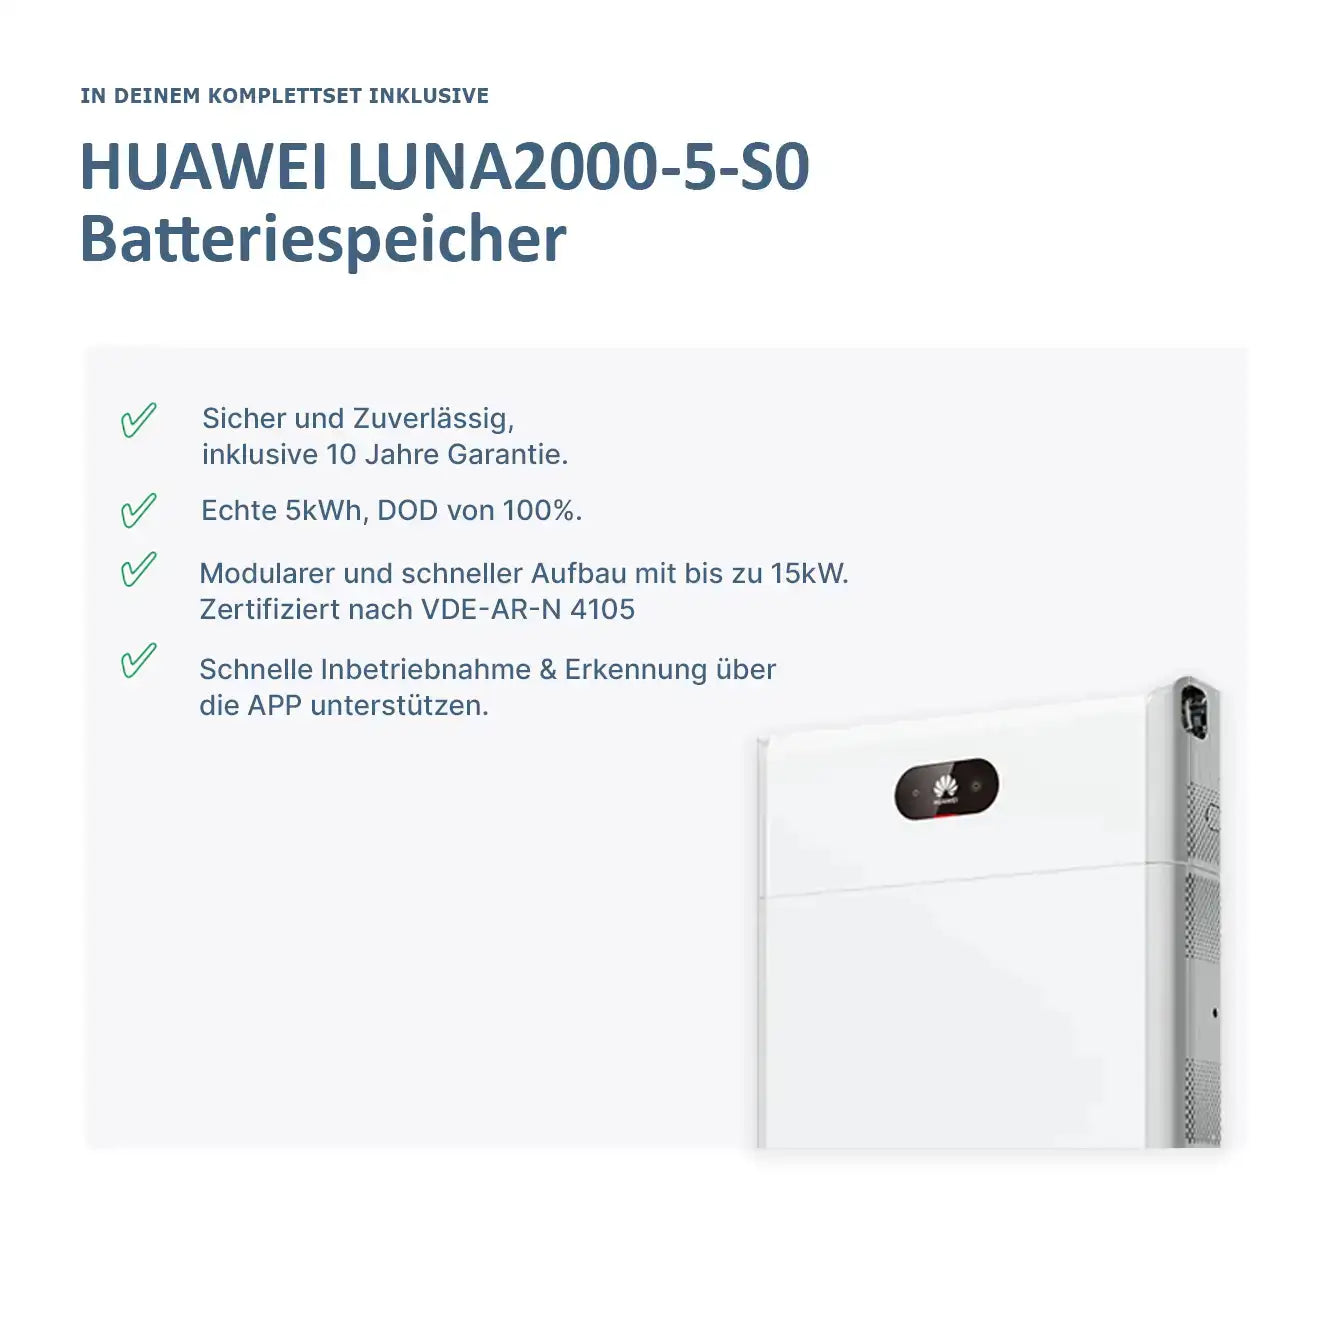 Huawei inverter 6KW + Huawei Luna 2000-5-s0 set